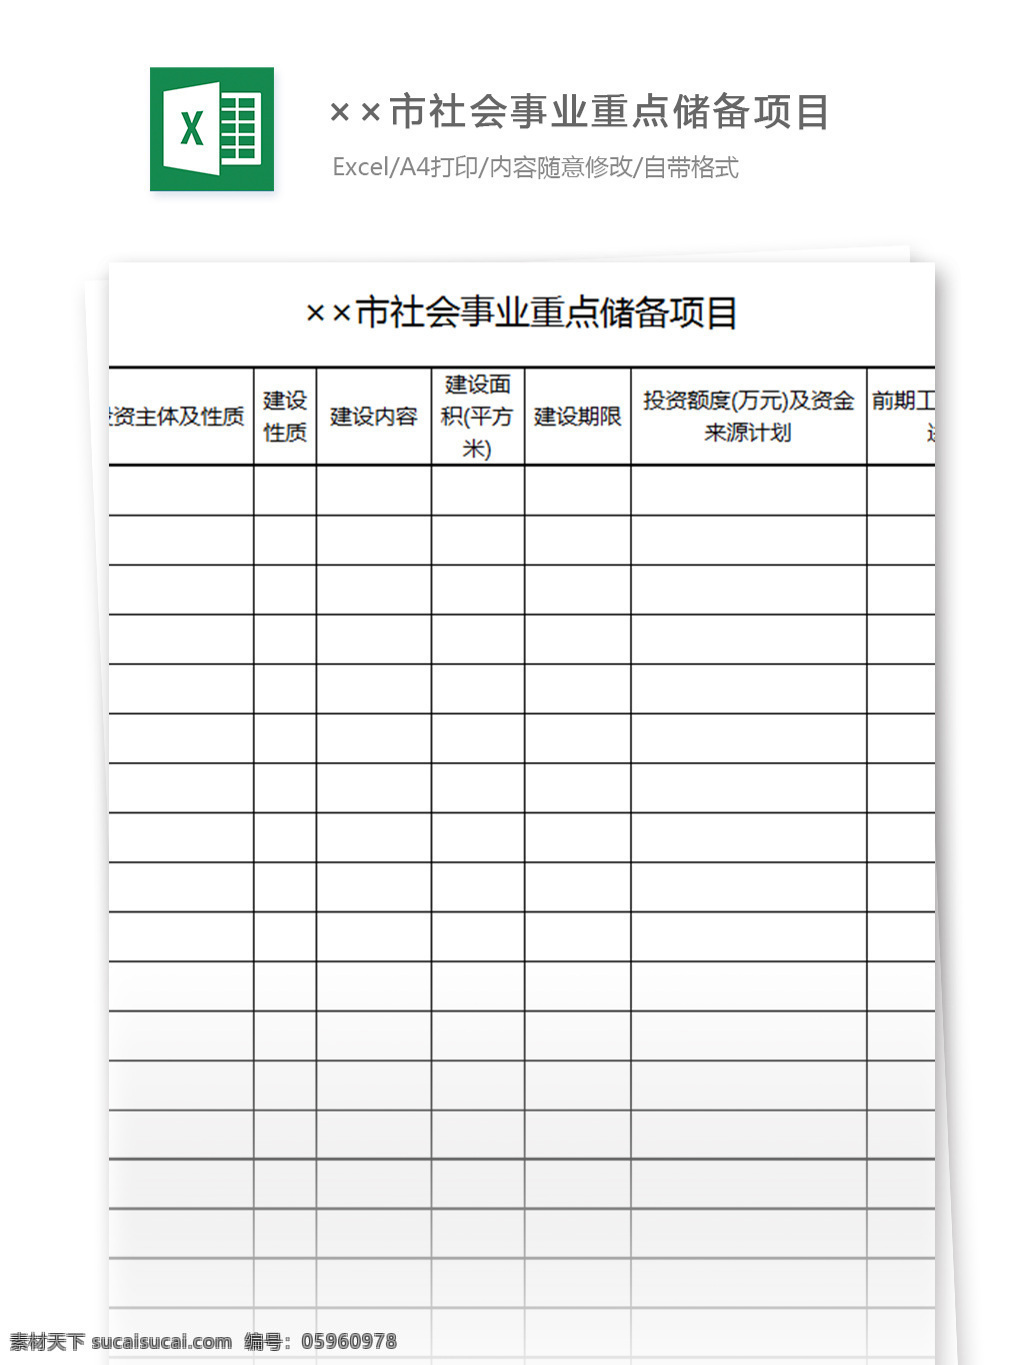 社会事业 重点 储备 项目 表格模板 图表 表格设计 表格 财务报表 社团 社会 项目管理 行业表格 应用文书